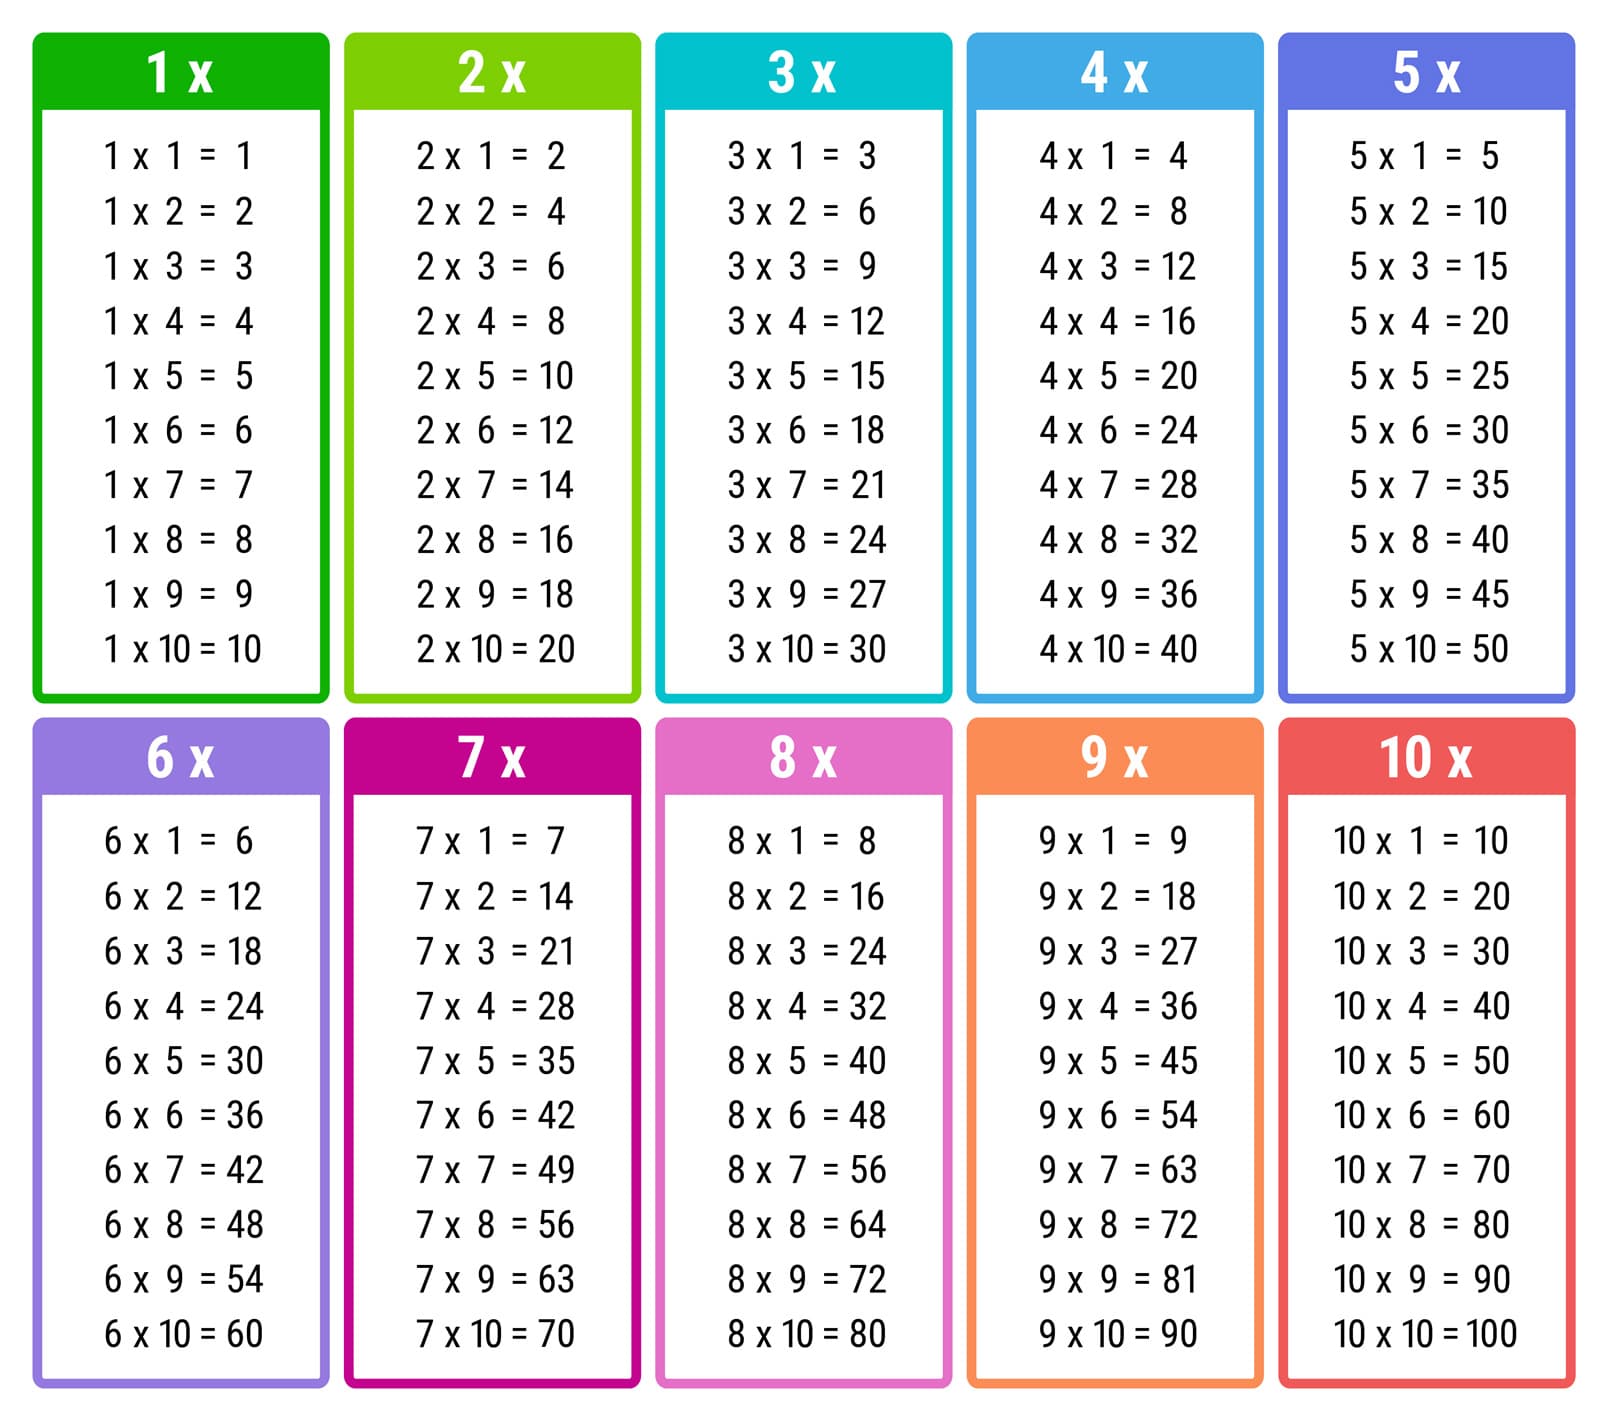 Astuces pour mémoriser les tables de multiplication - Apprendre, réviser,  mémoriser